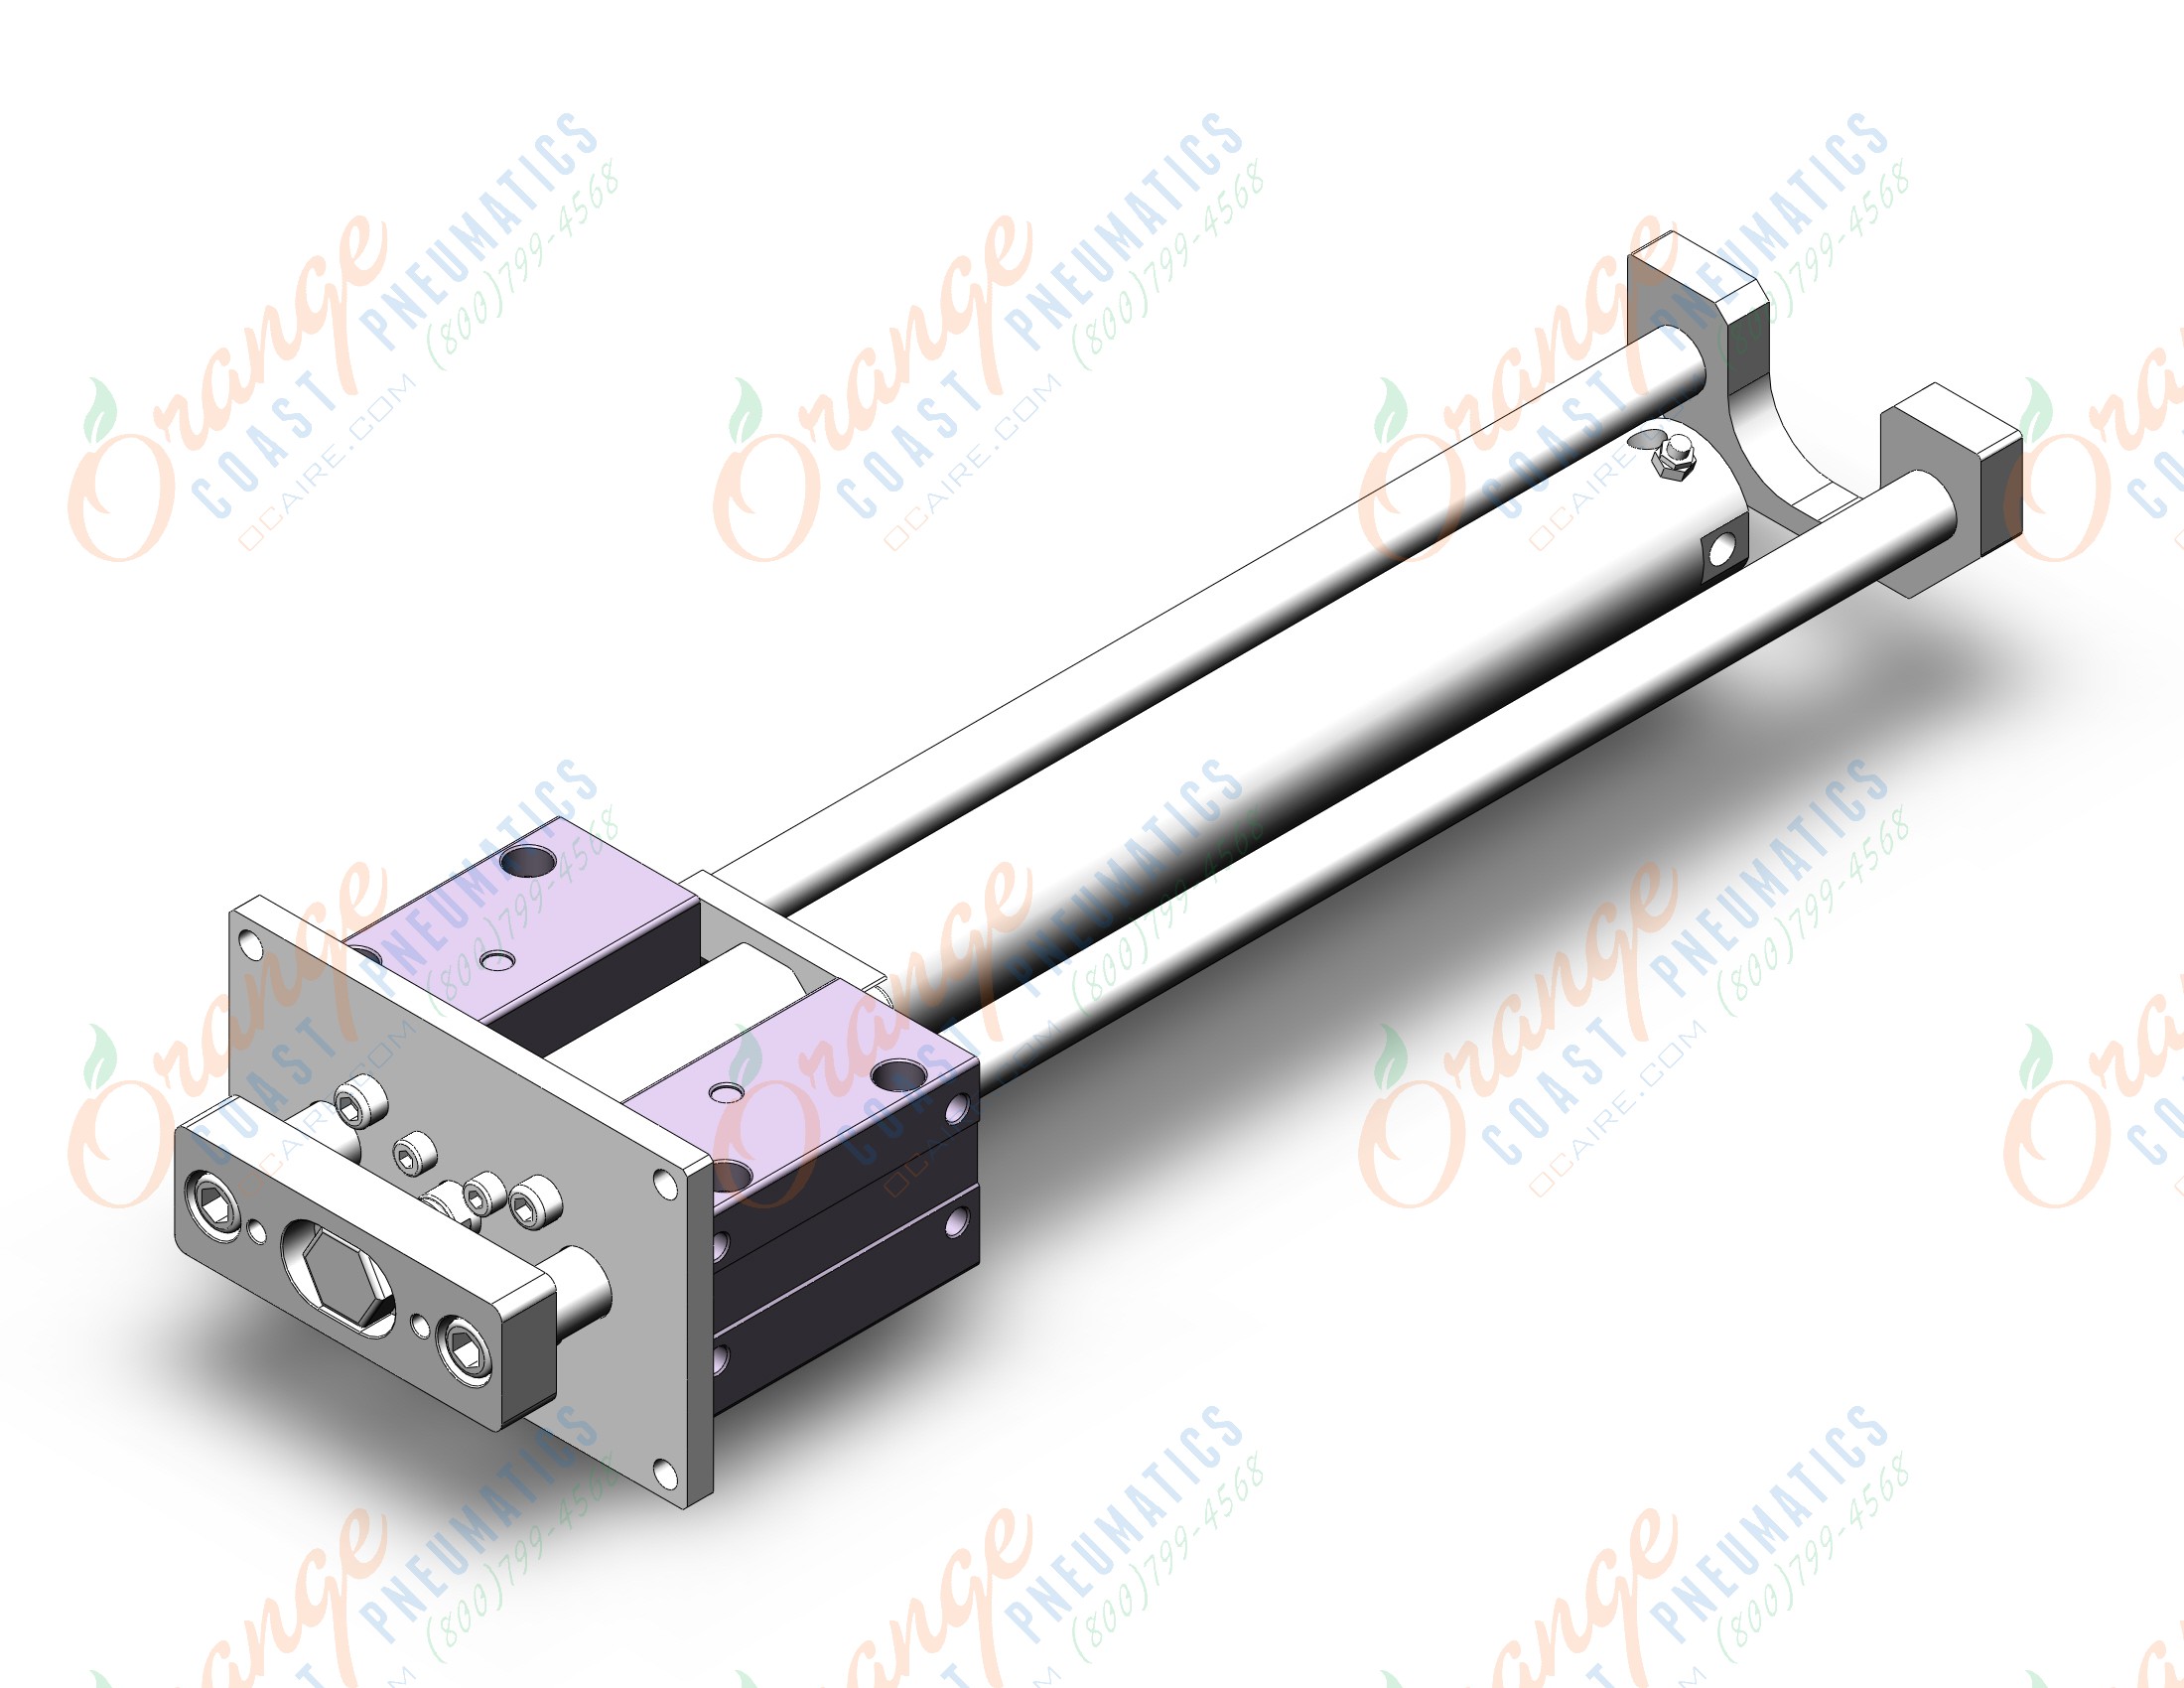 SMC MGCMF50-450-R 50mm mgcl/mgcm slide bearing, MGCL/MGCM GUIDED CYLINDER